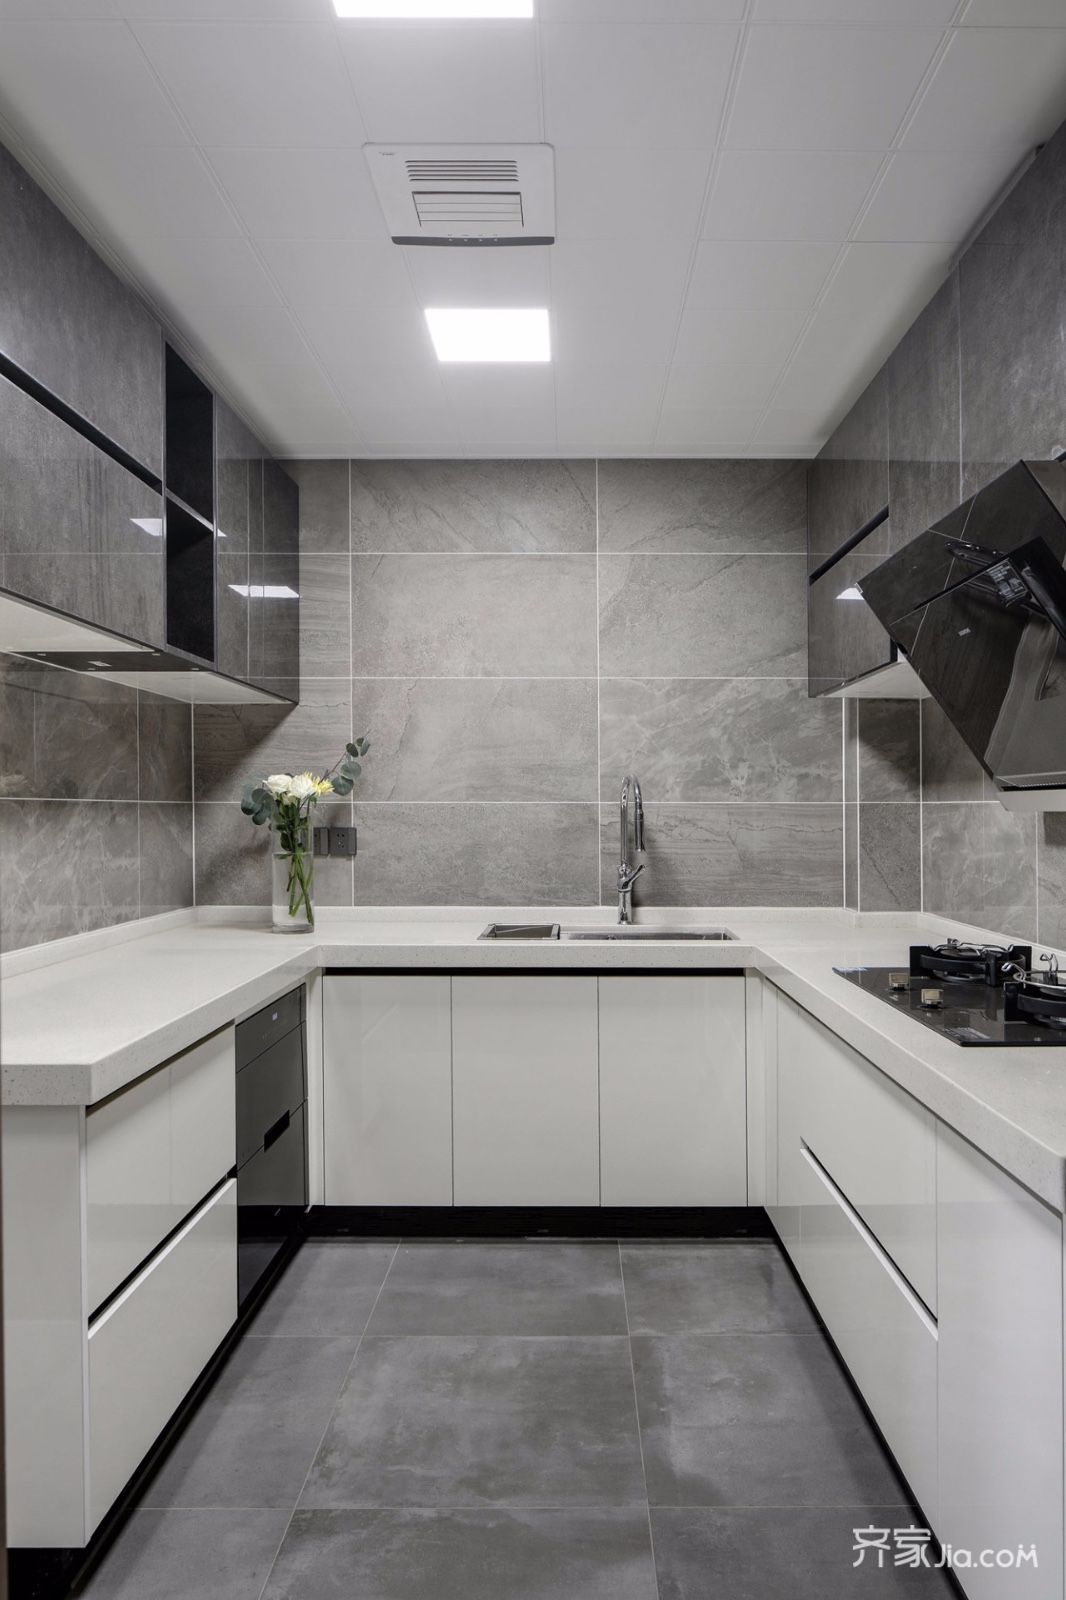 厨房白色的橱柜,搭配灰色的吊柜,带来的是一个简约时尚的烹饪体验.